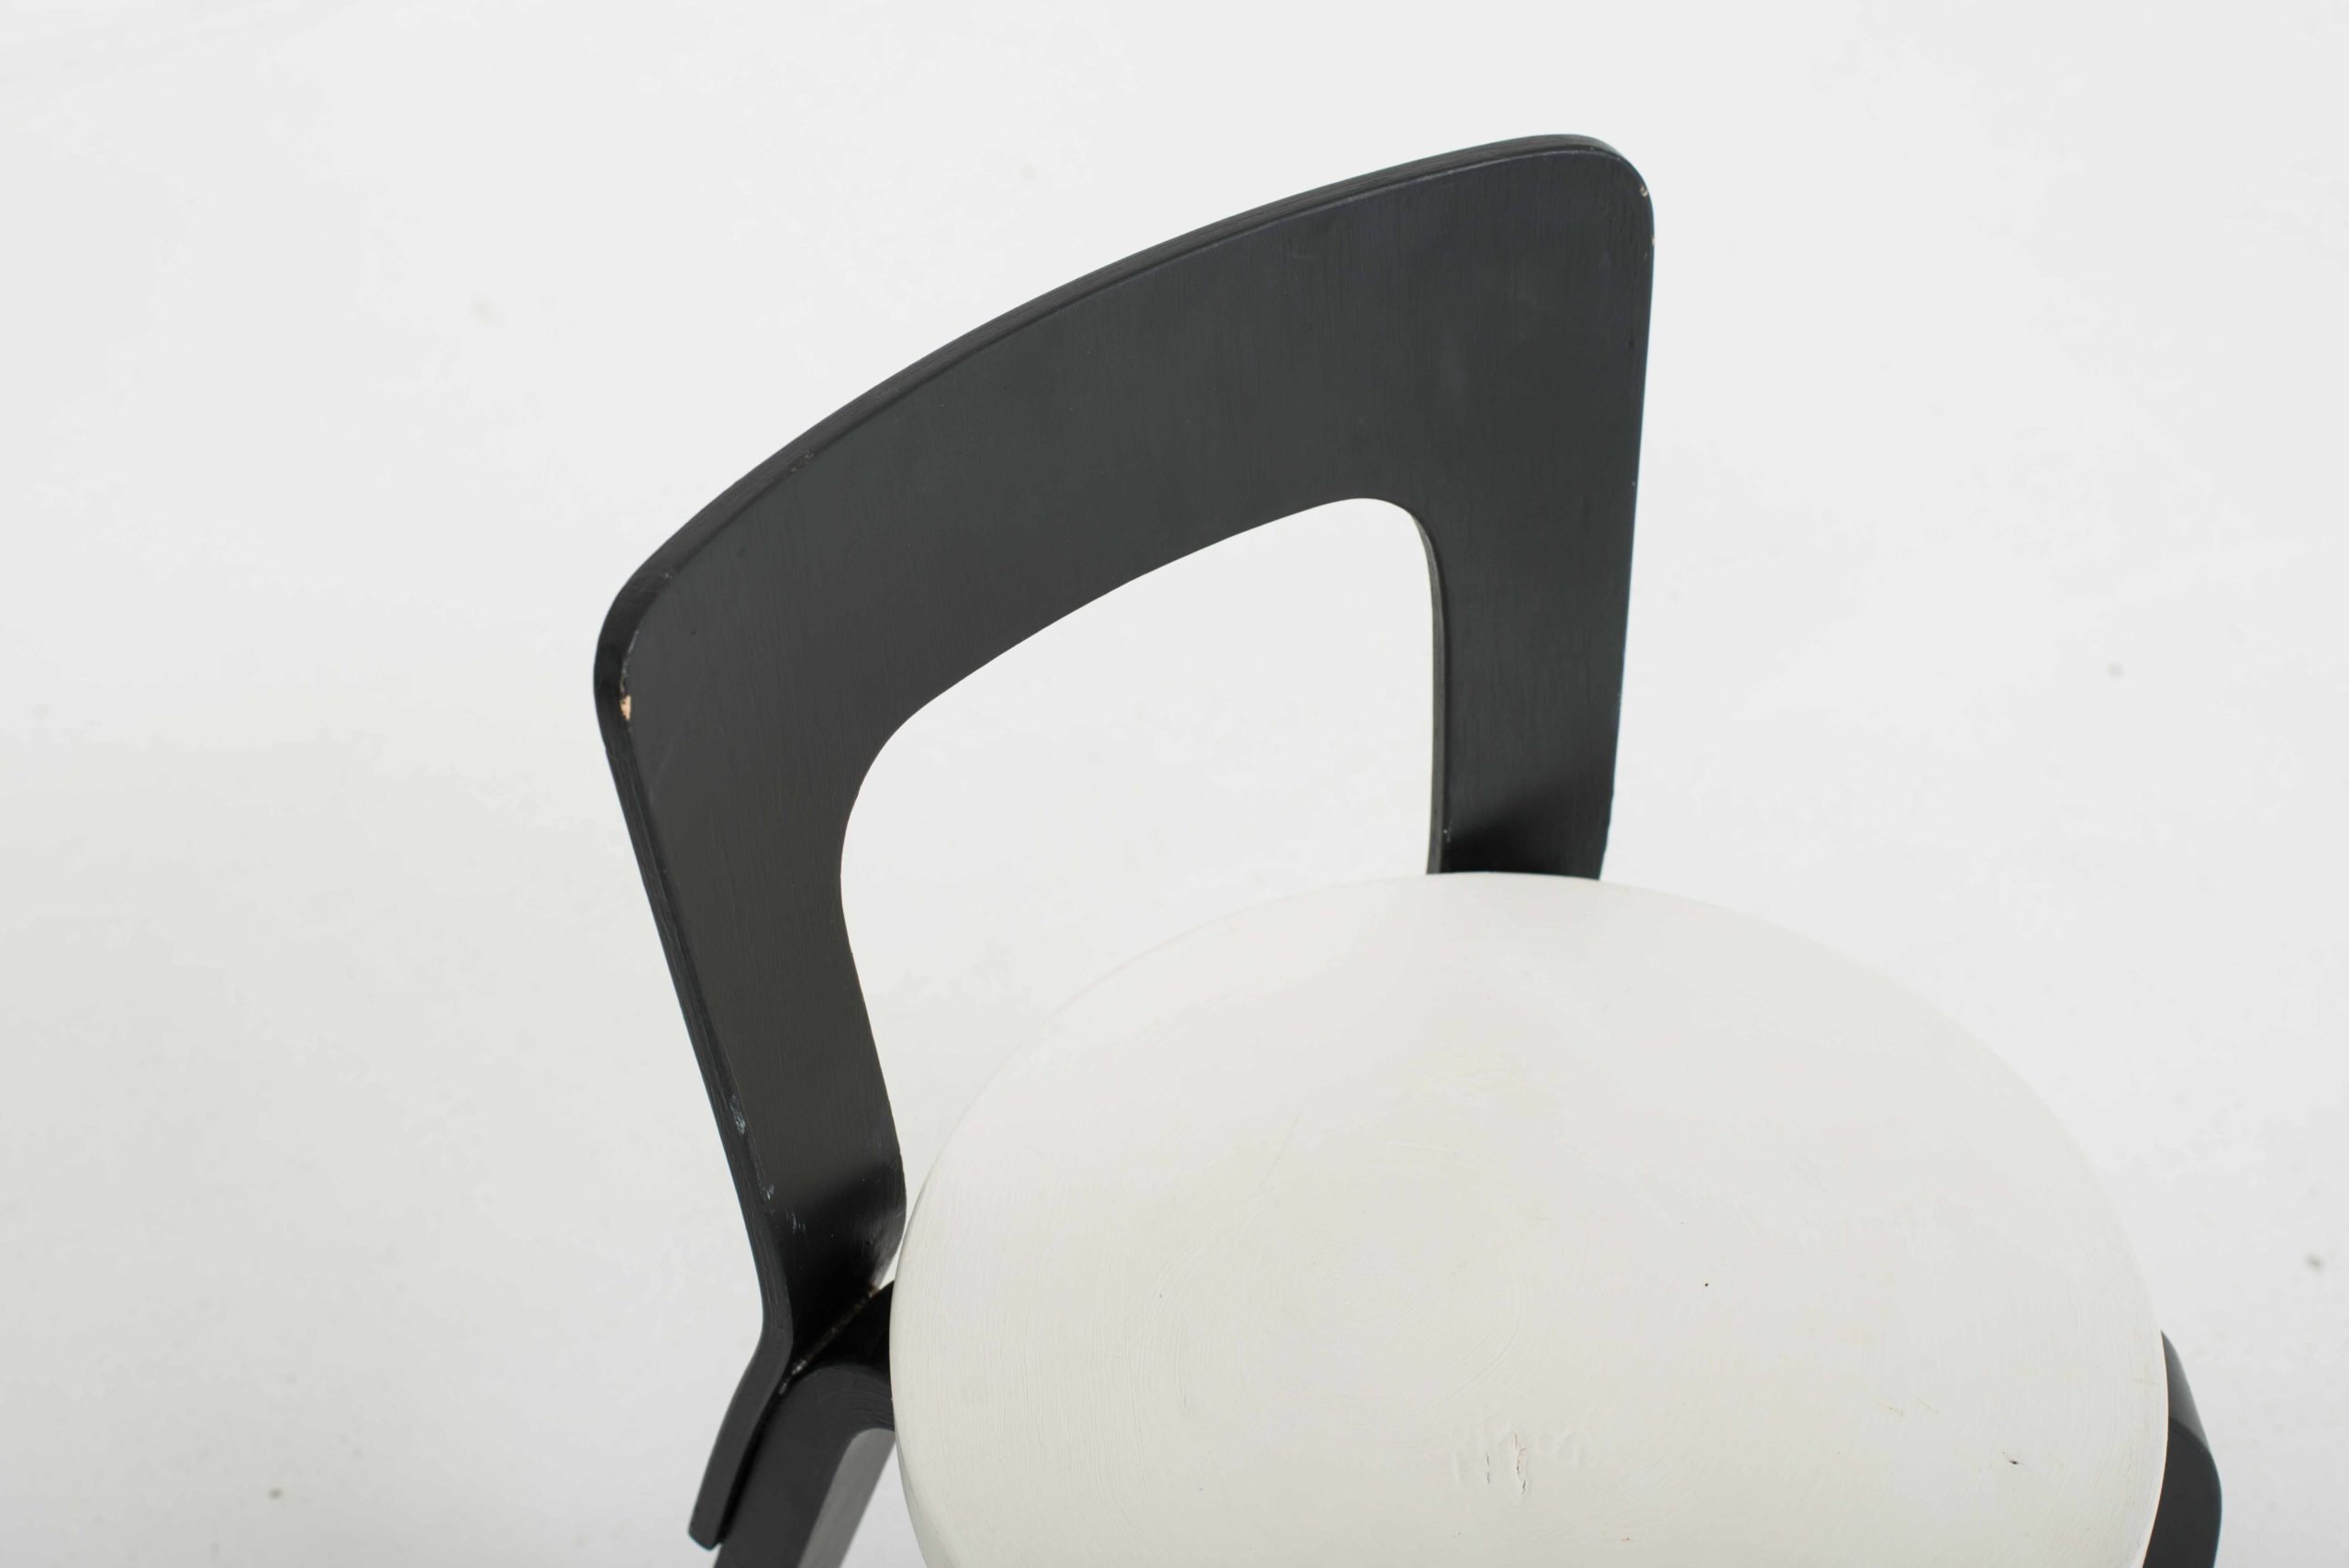 Artek Chair 65 von Alvar Aalto, im Zweierset-5